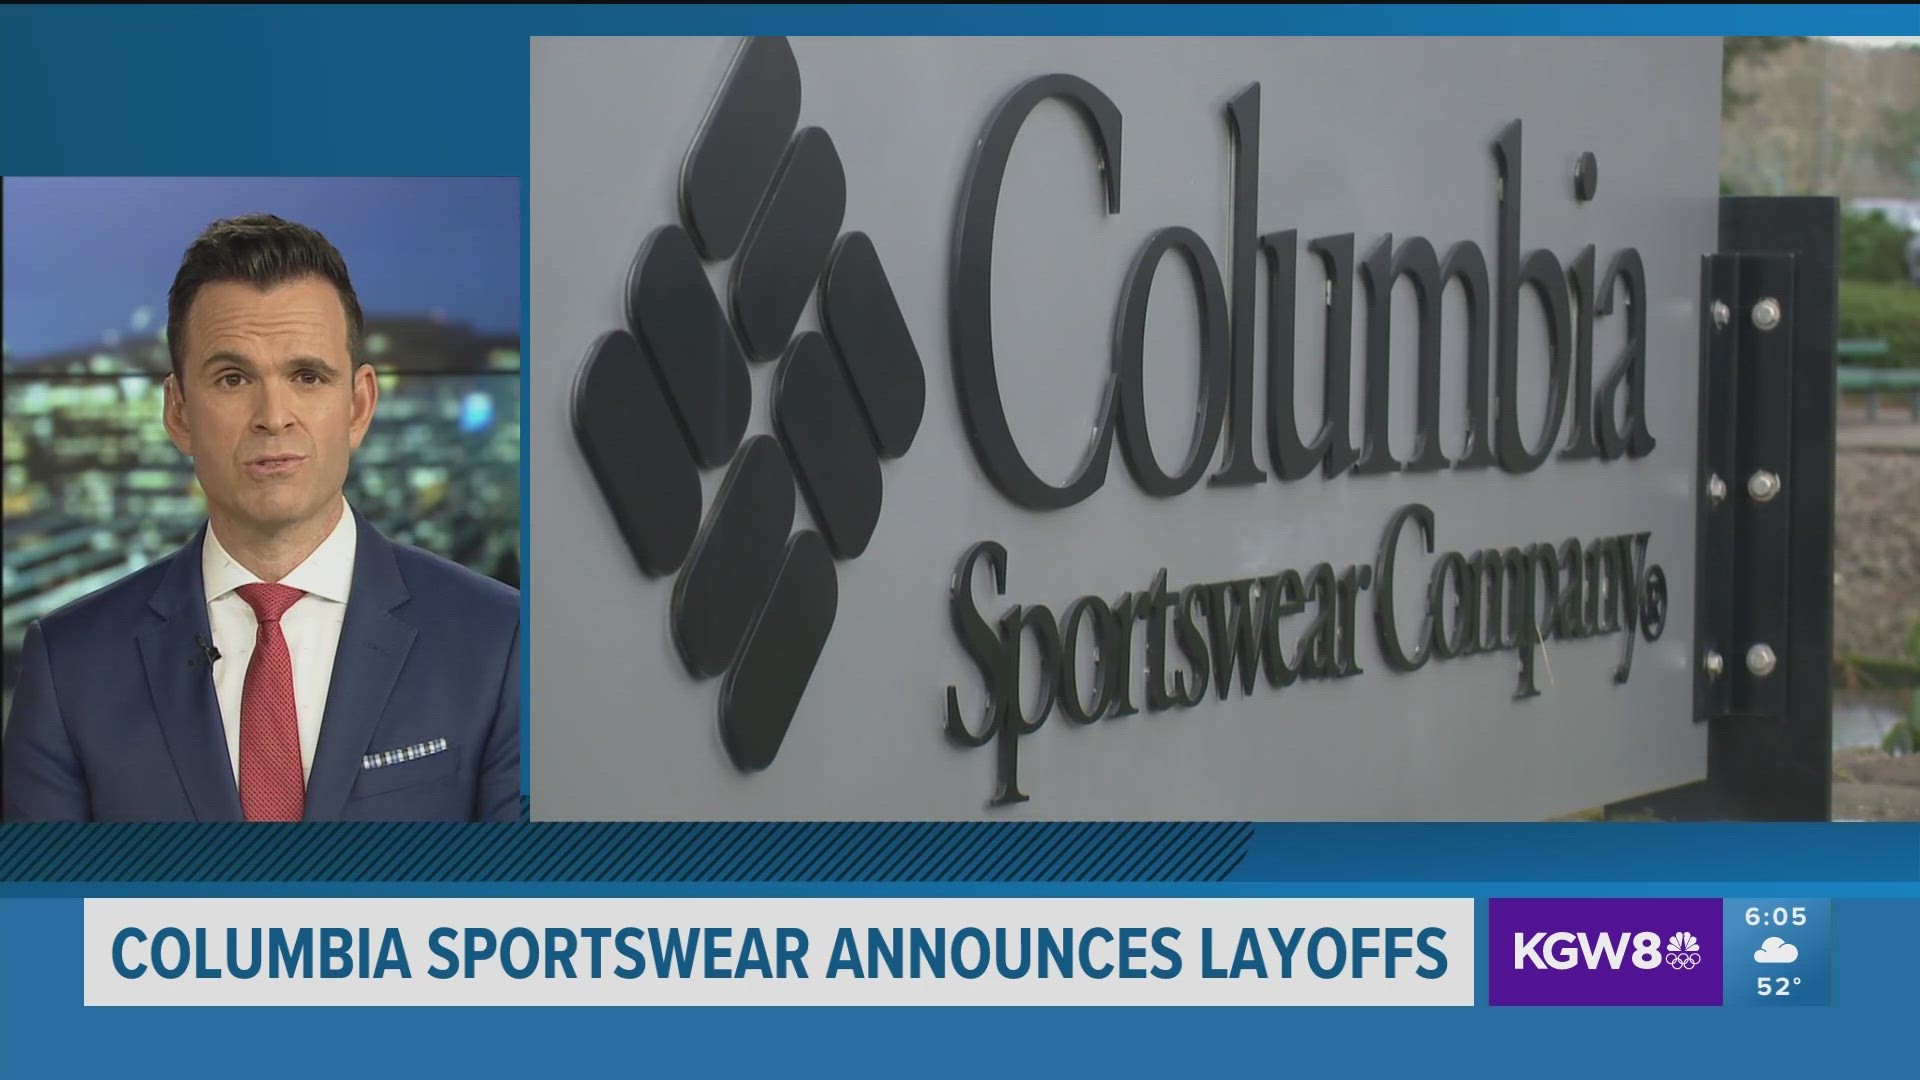 Columbia Sportswear updated their - Columbia Sportswear